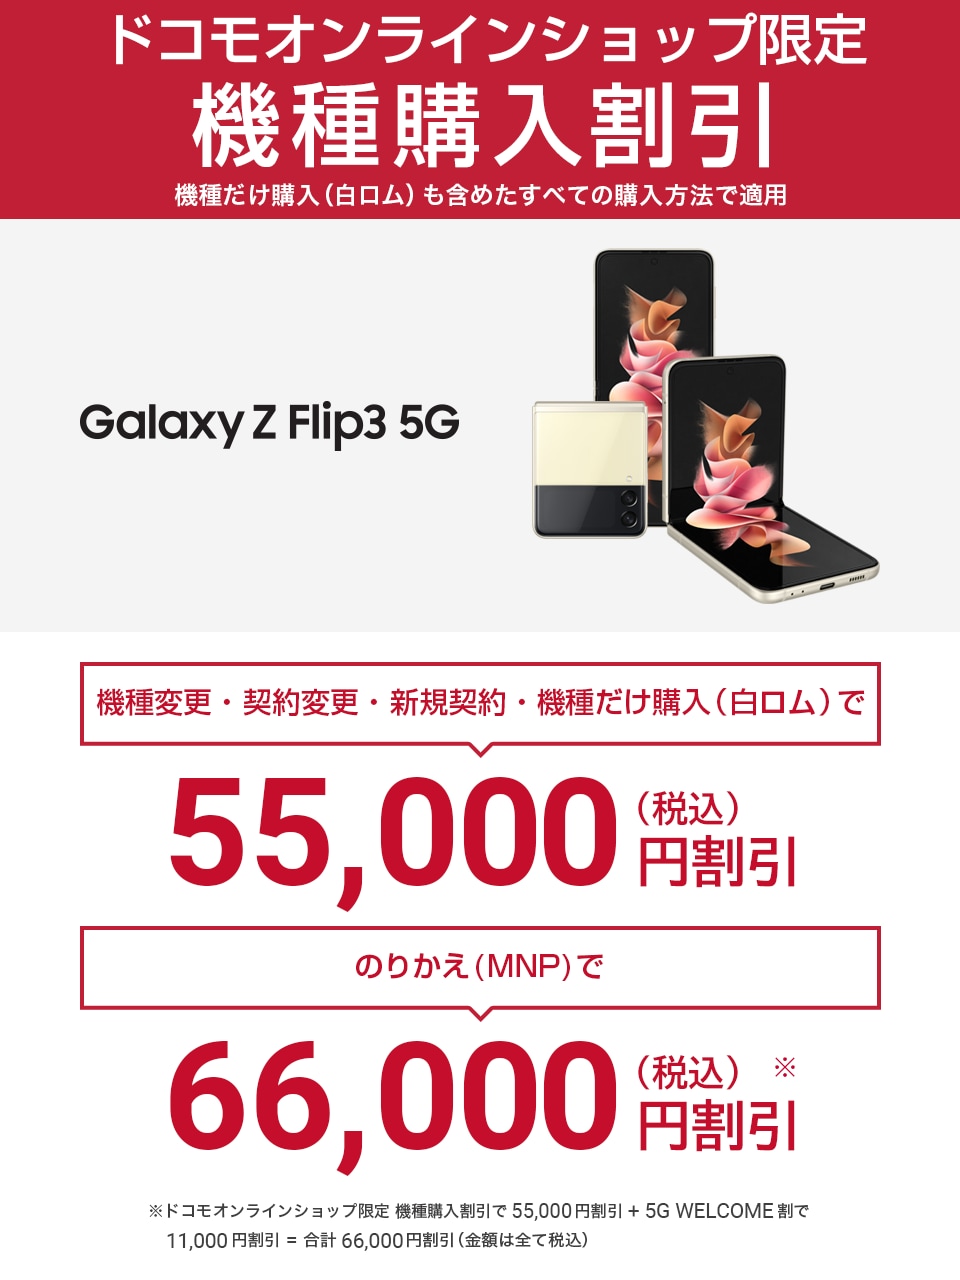 ドコモ】話題のおりたたみスマホ、Galaxy Z Flip3 5Gが期間限定で